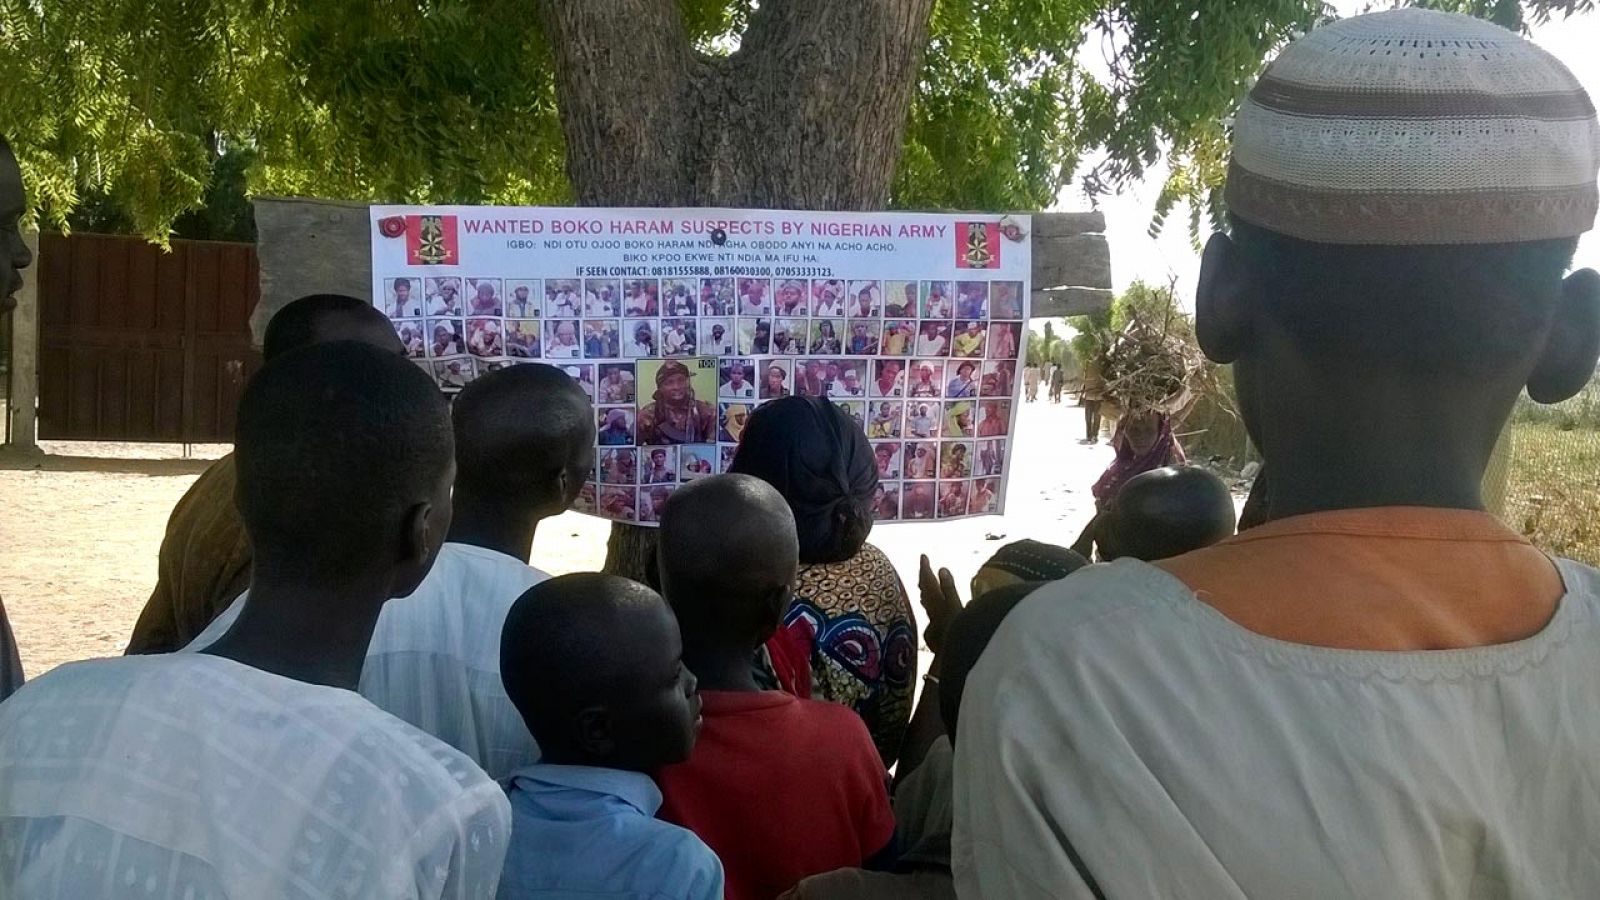 Un grupo de nigerianos observa un cartel con fotos de presuntos terroristas de Boko Haram en busca y captura